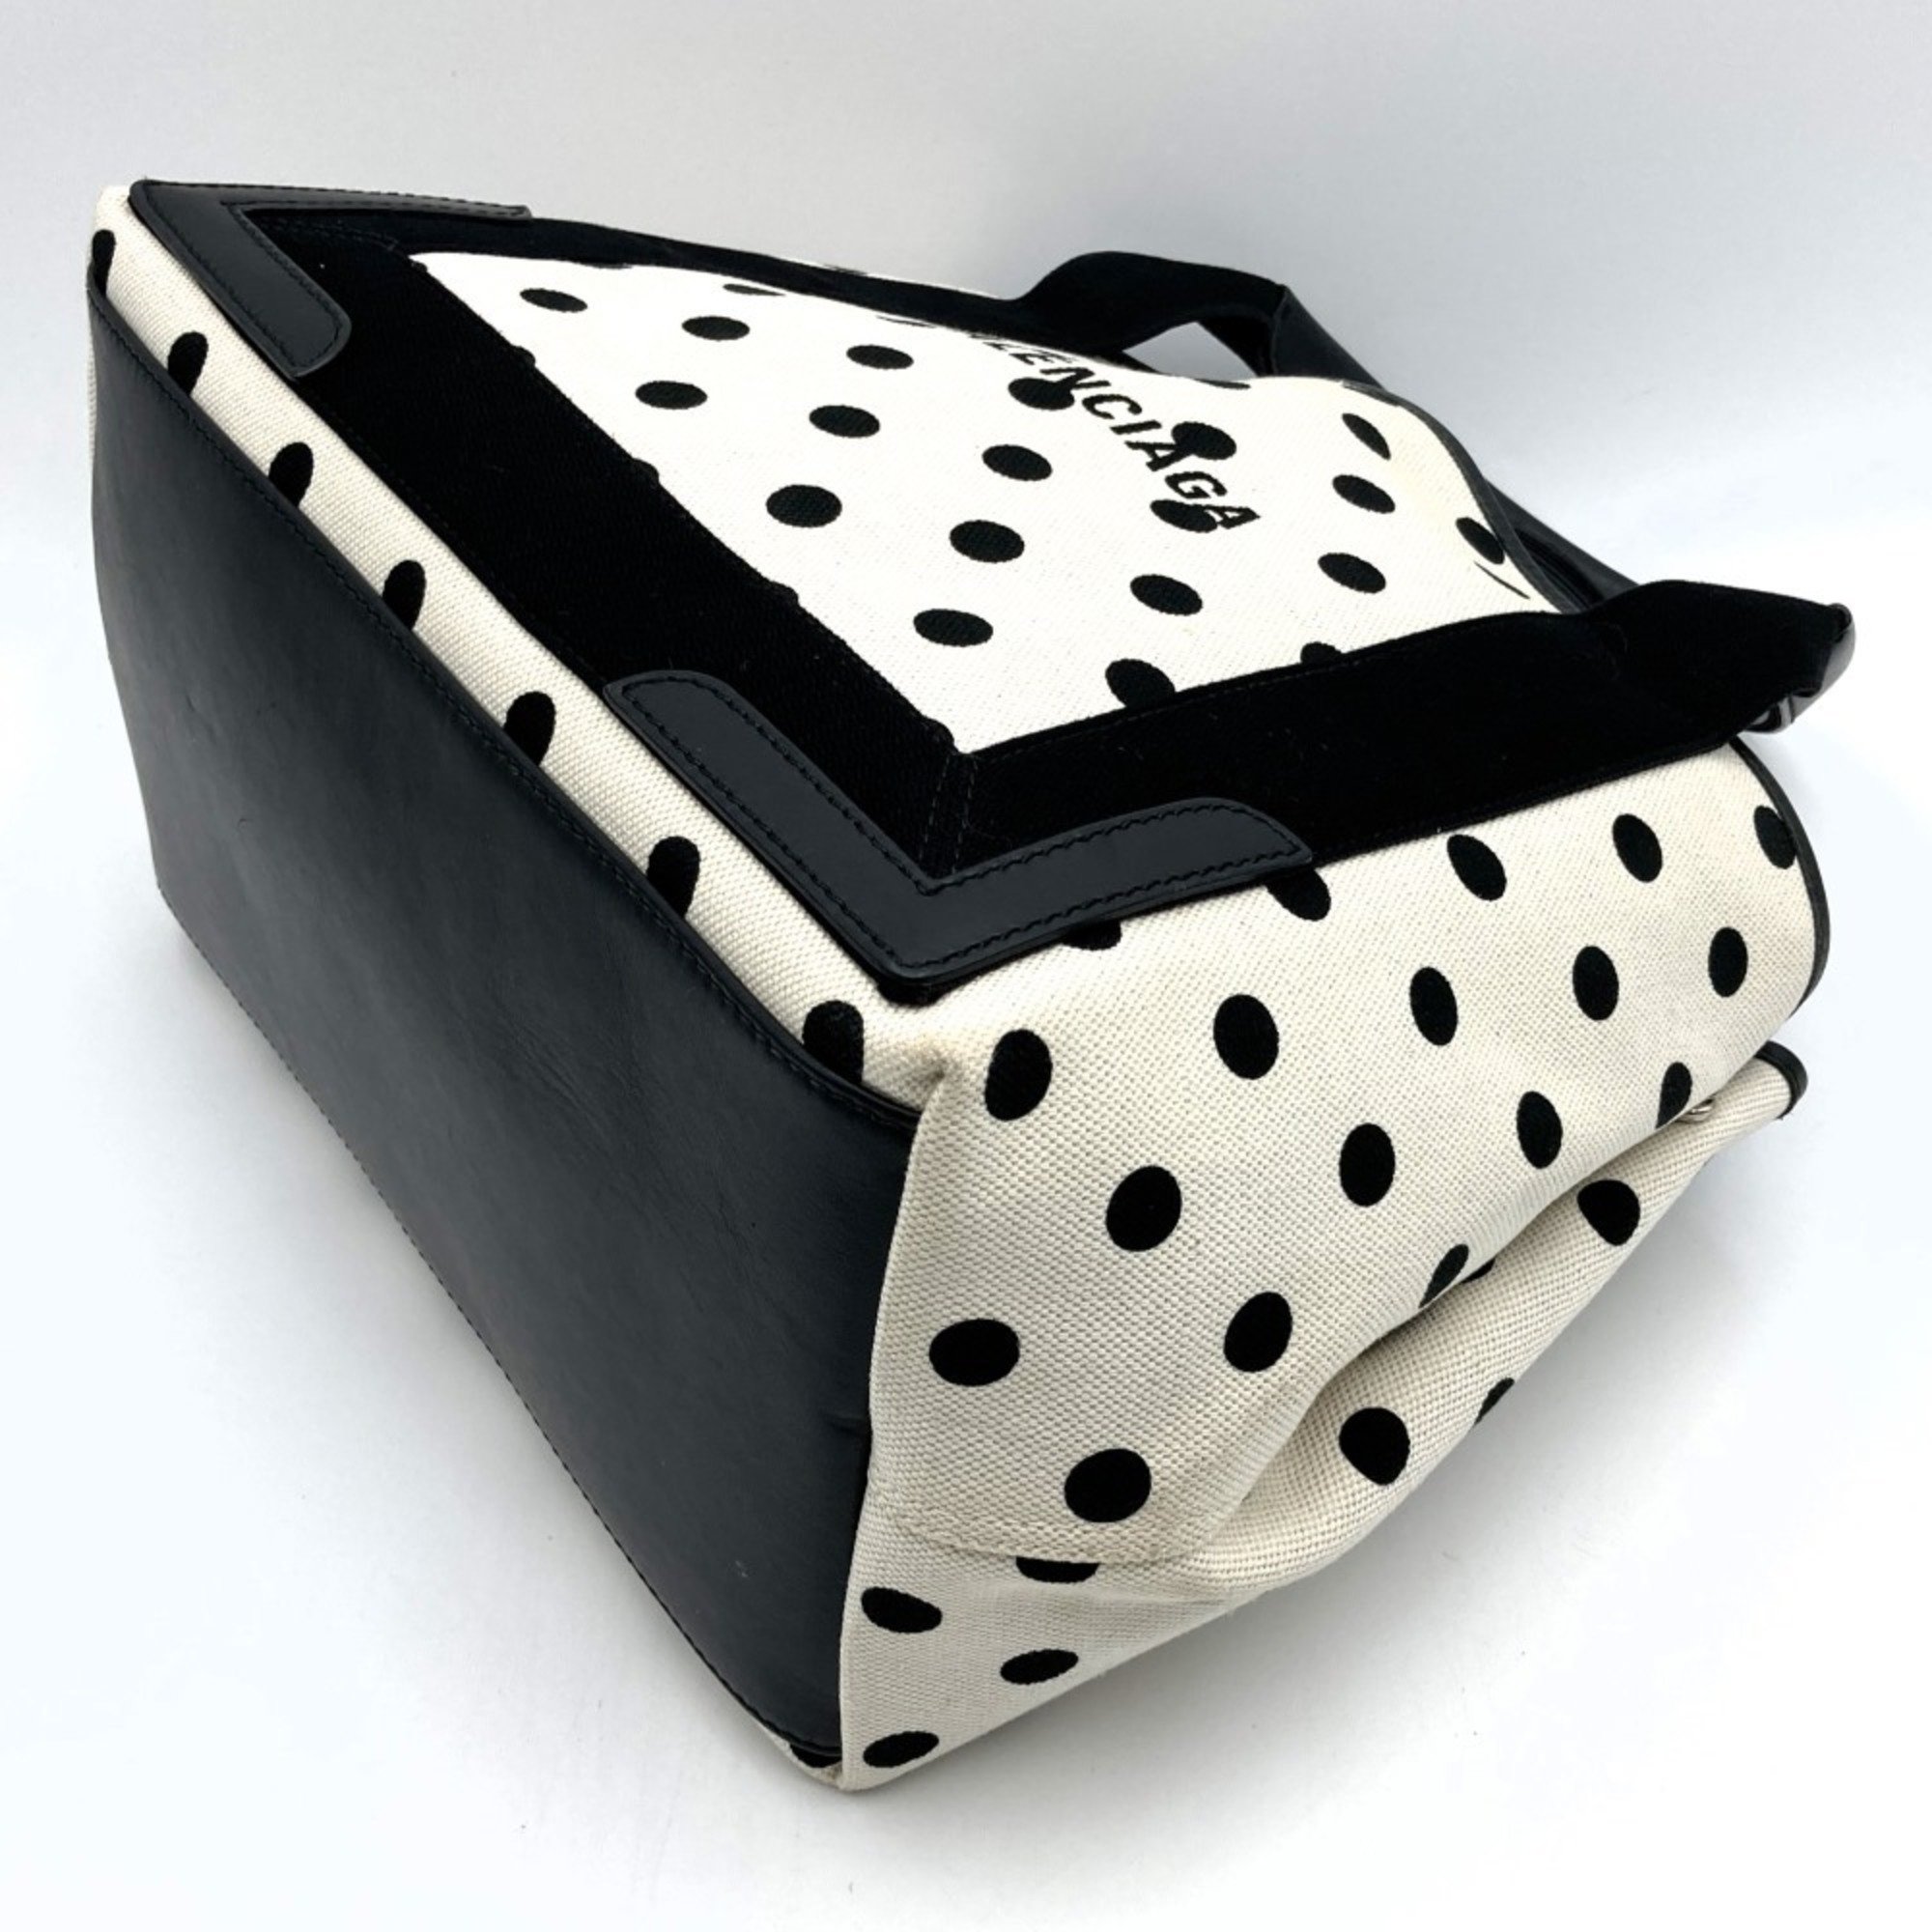 Balenciaga Cabas S Handbag Tote Bag White Black Two-tone Polka Dot Canvas 339933 BALENCIAGA